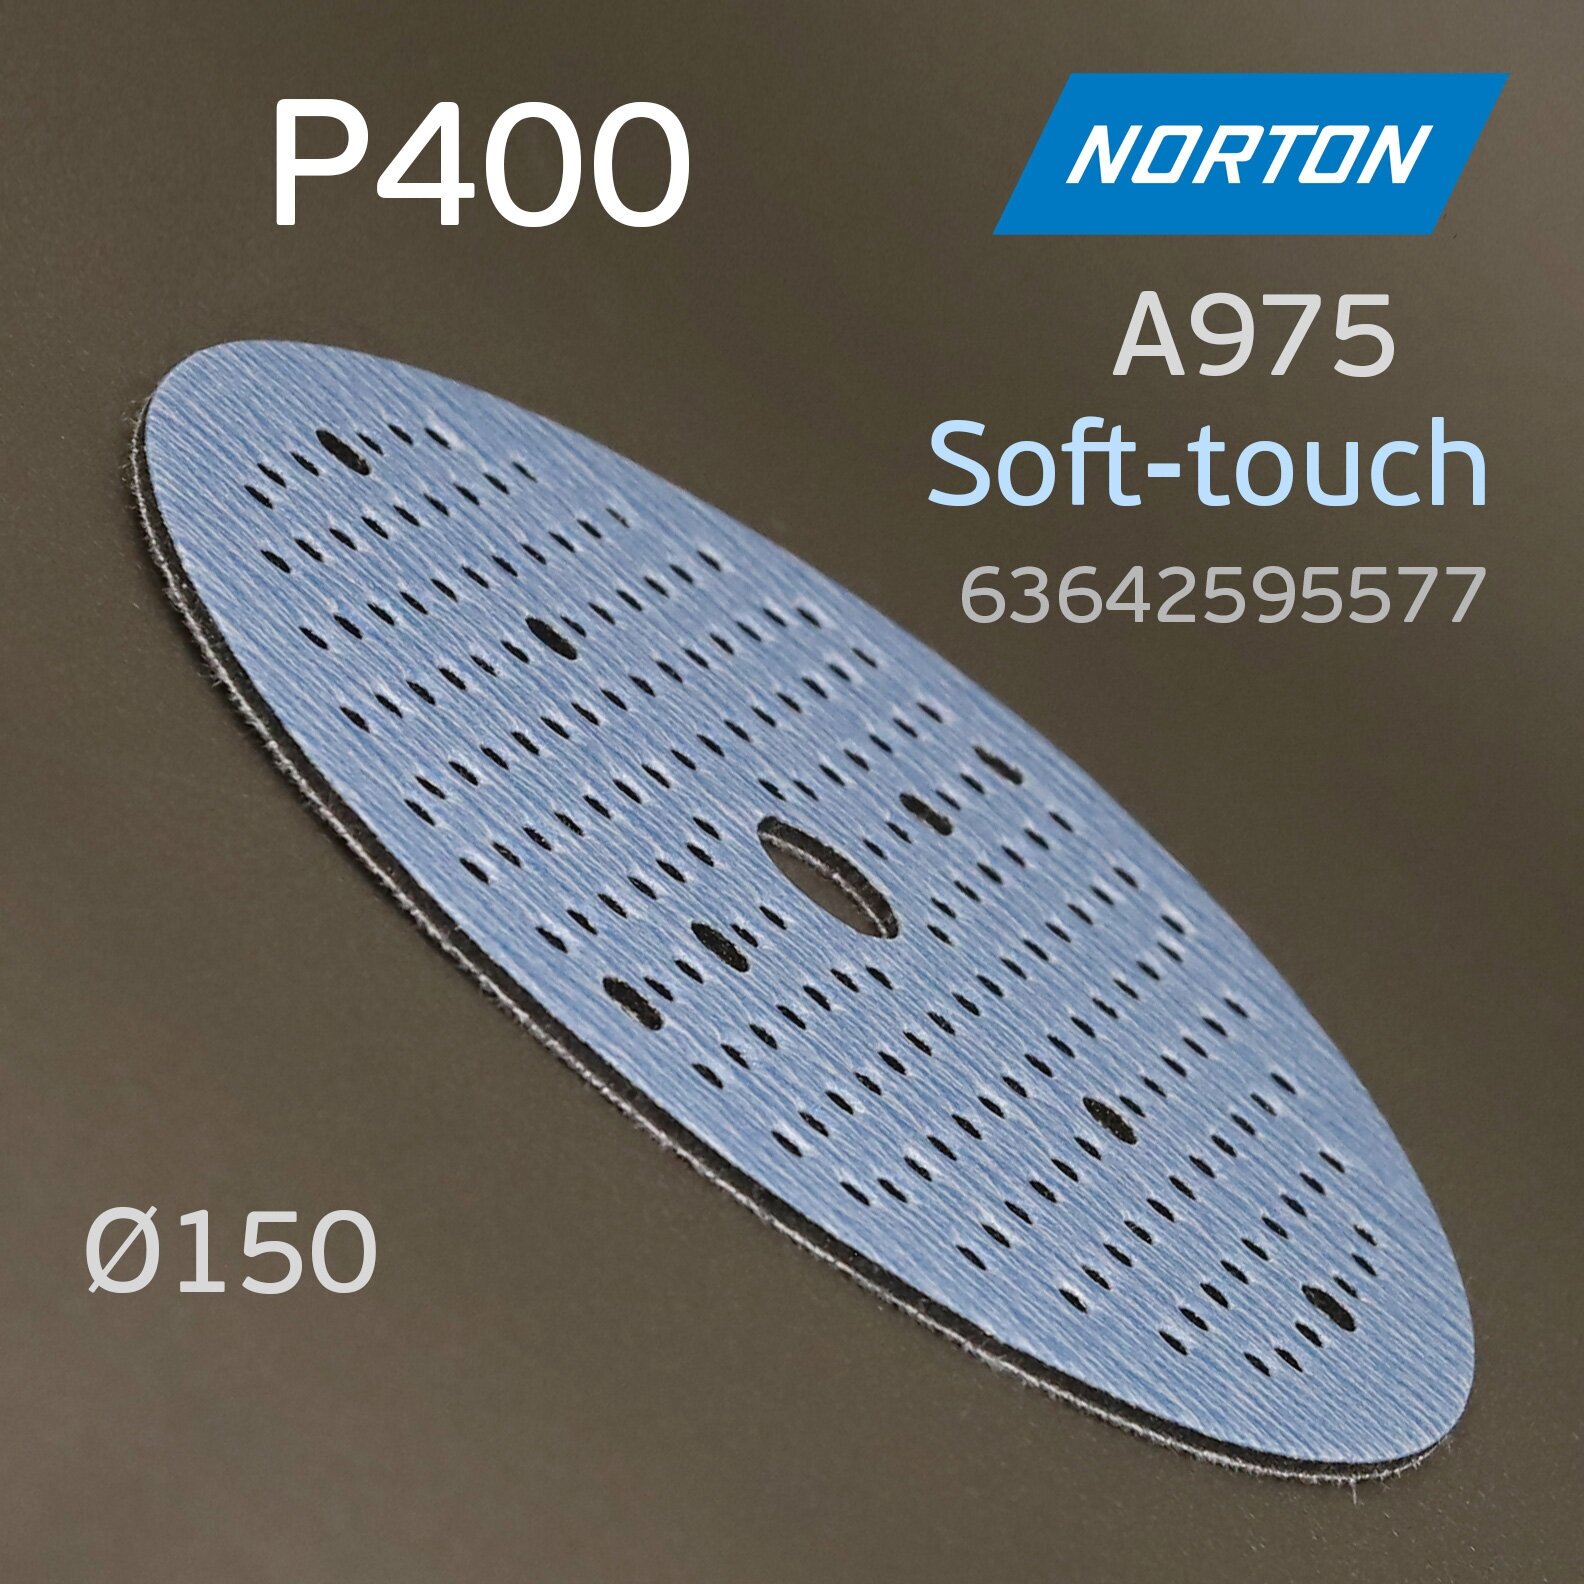 Круг шлифовальный Norton A975 Р400 на поролоне Soft-touch (181отв.) липучка